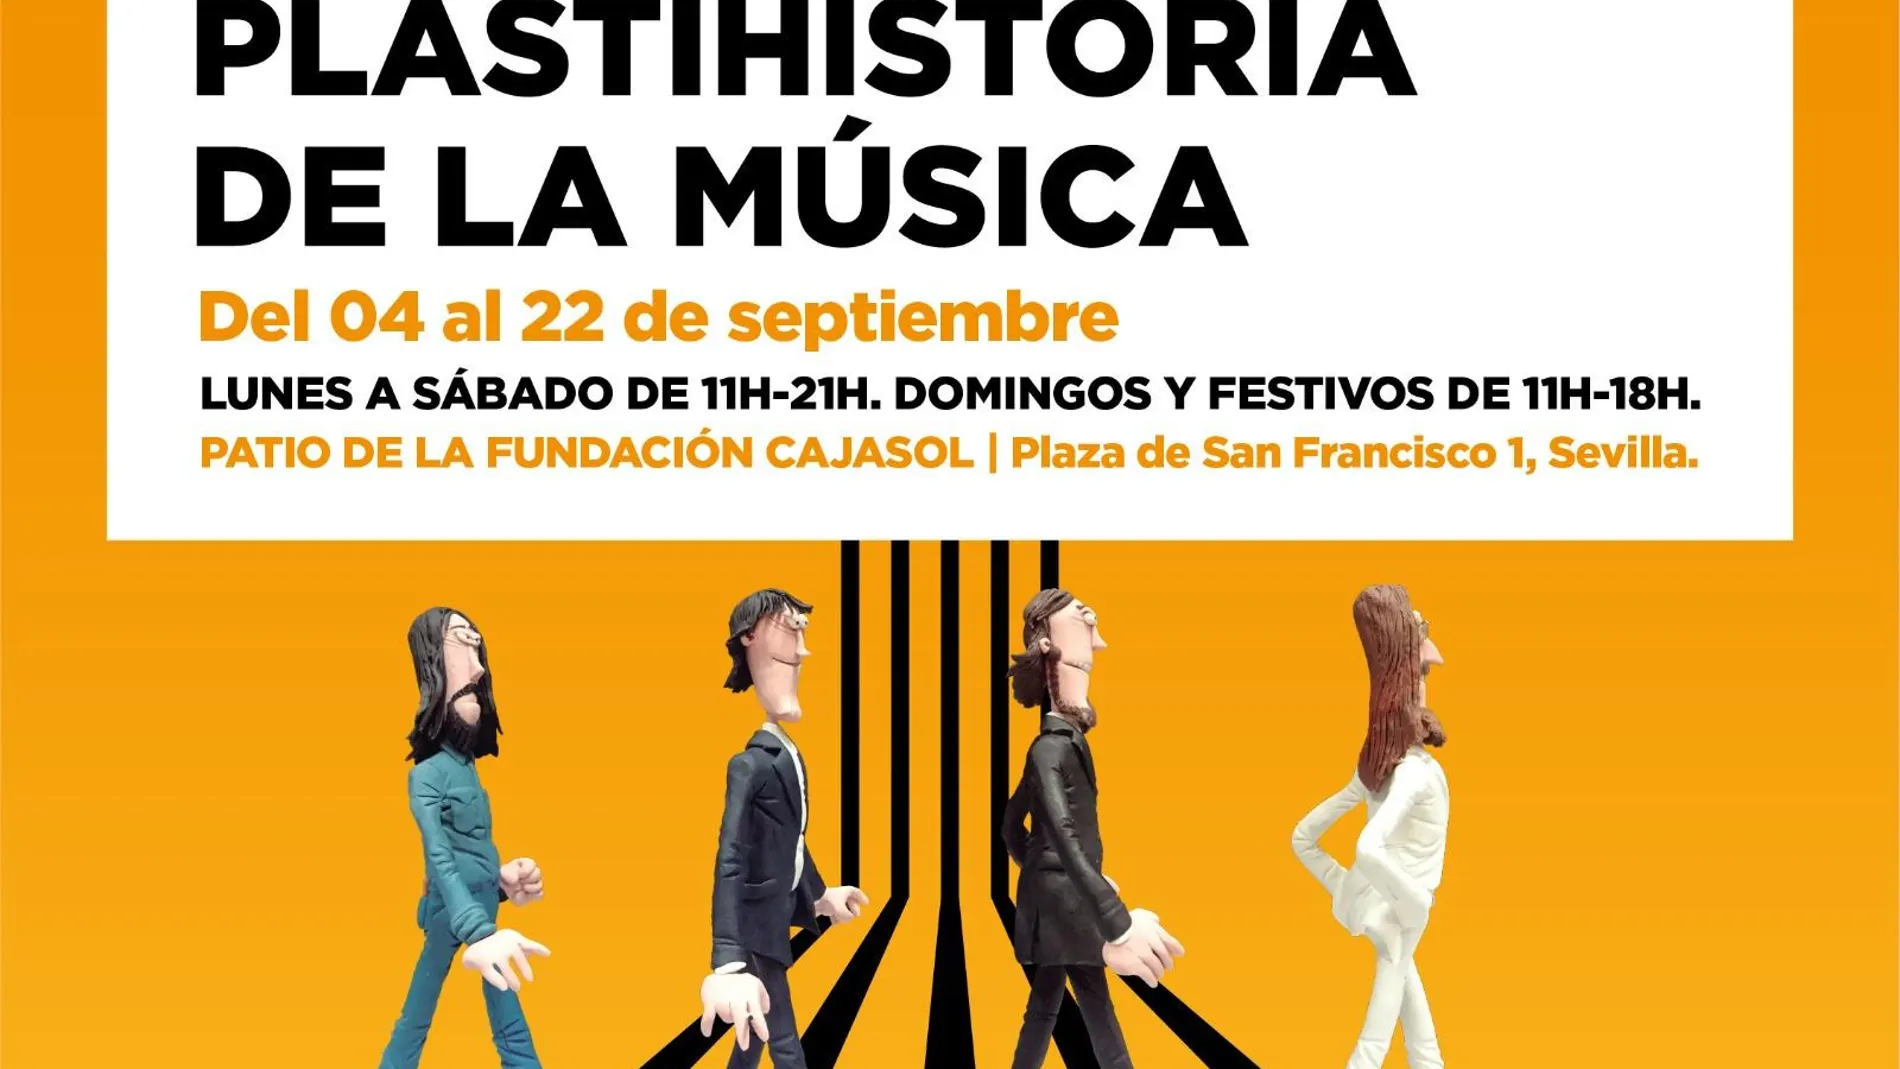 Cartel anunciador de la exposición "Plastihistoria de la Música"/ La Razón